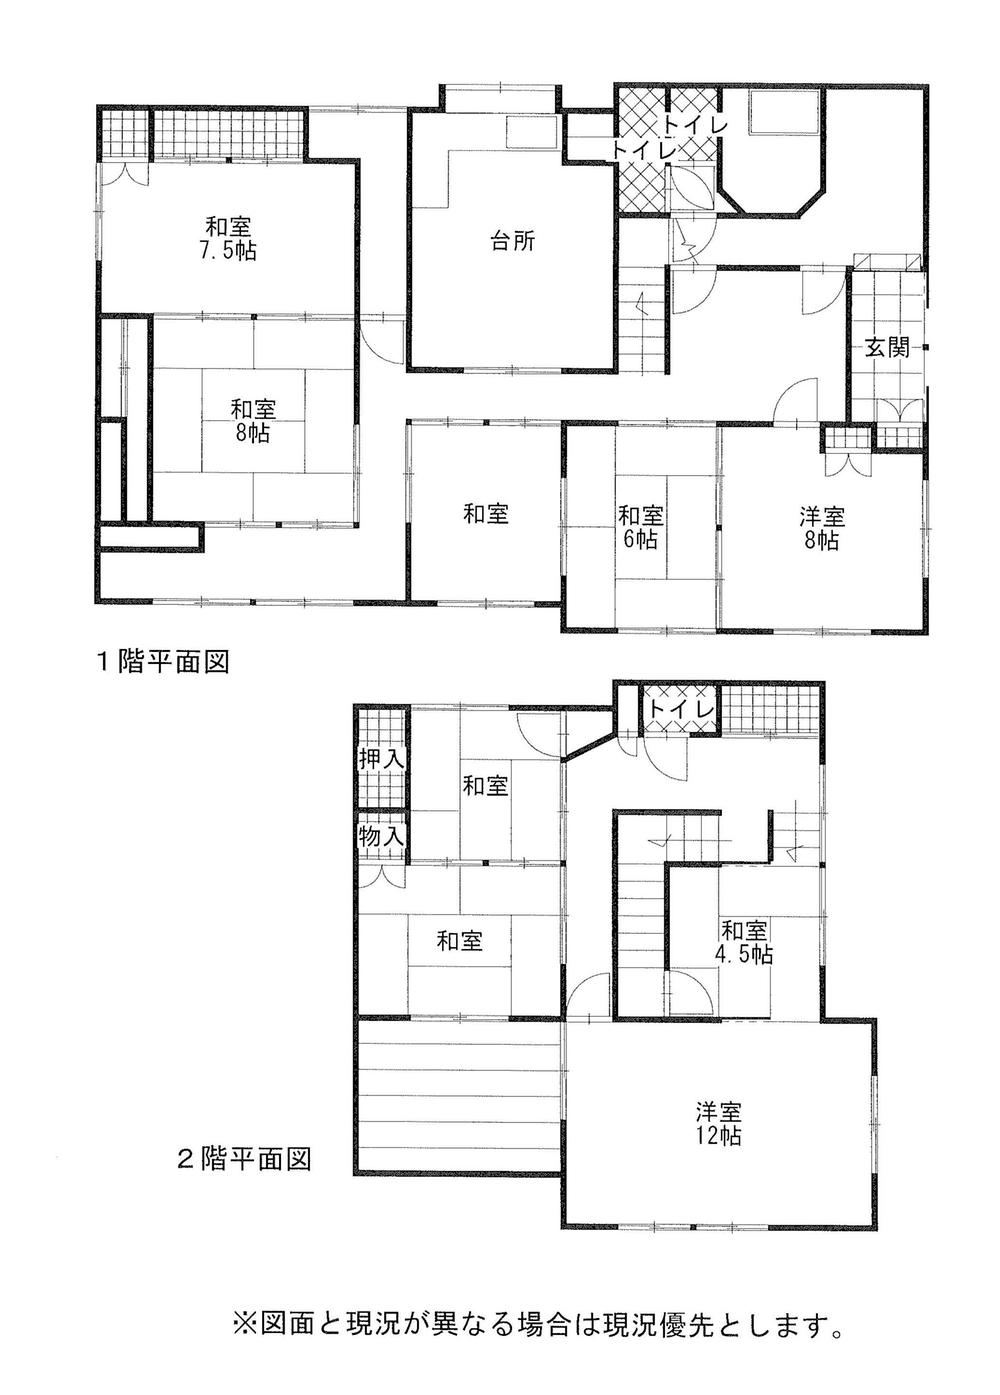 Floor plan. 17 million yen, 9DK, Land area 330.76 sq m , Building area 199.52 sq m 8DK